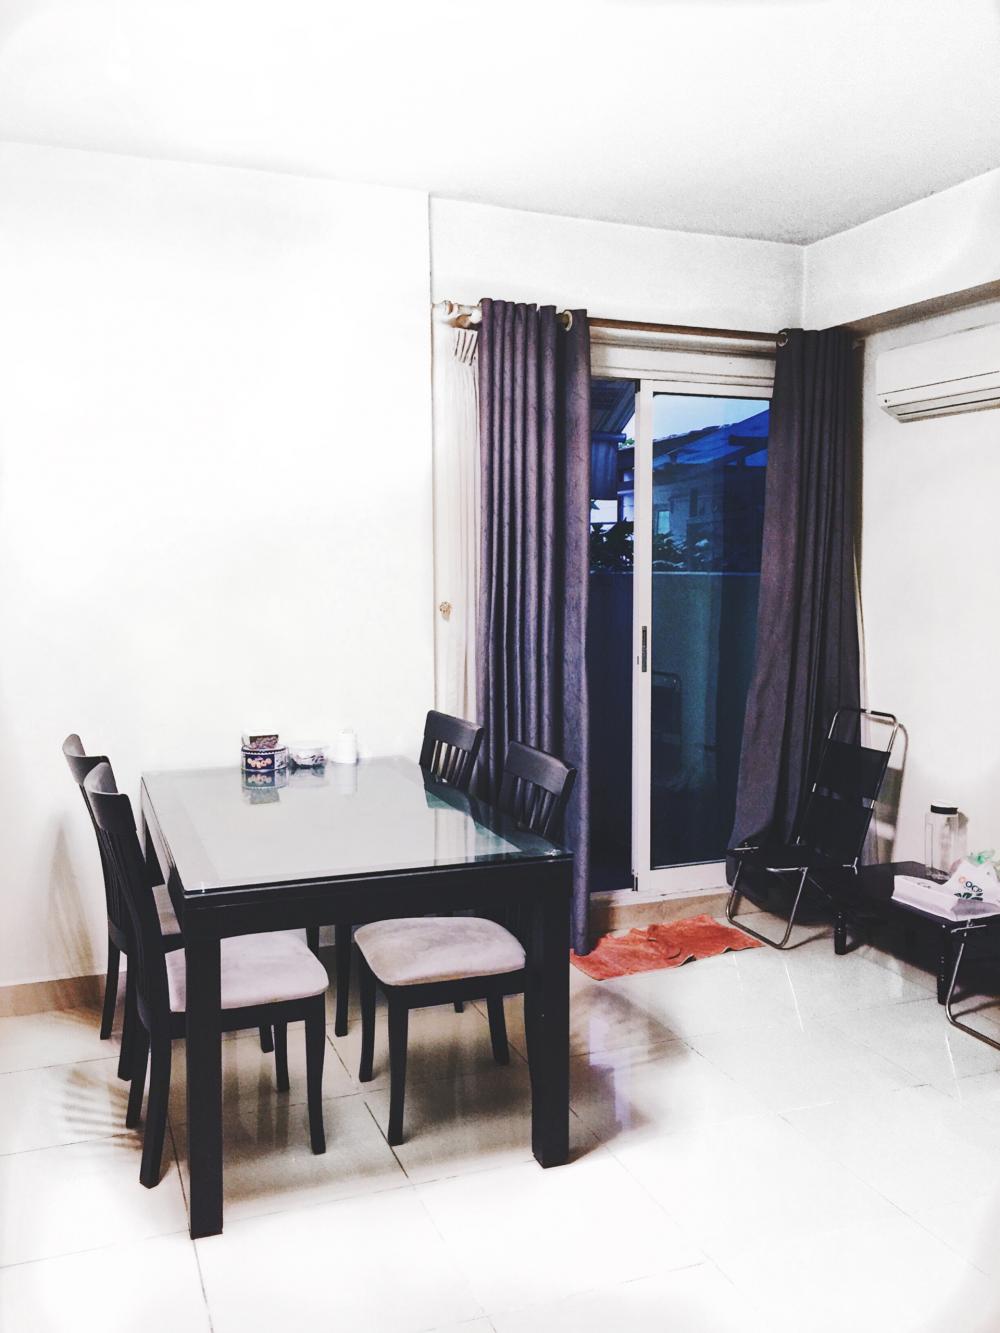 Cần cho thuê gấp căn hộ Conic Đình Khiêm, giá rẻ chỉ 6,5tr/tháng. Nhanh tay liên hệ